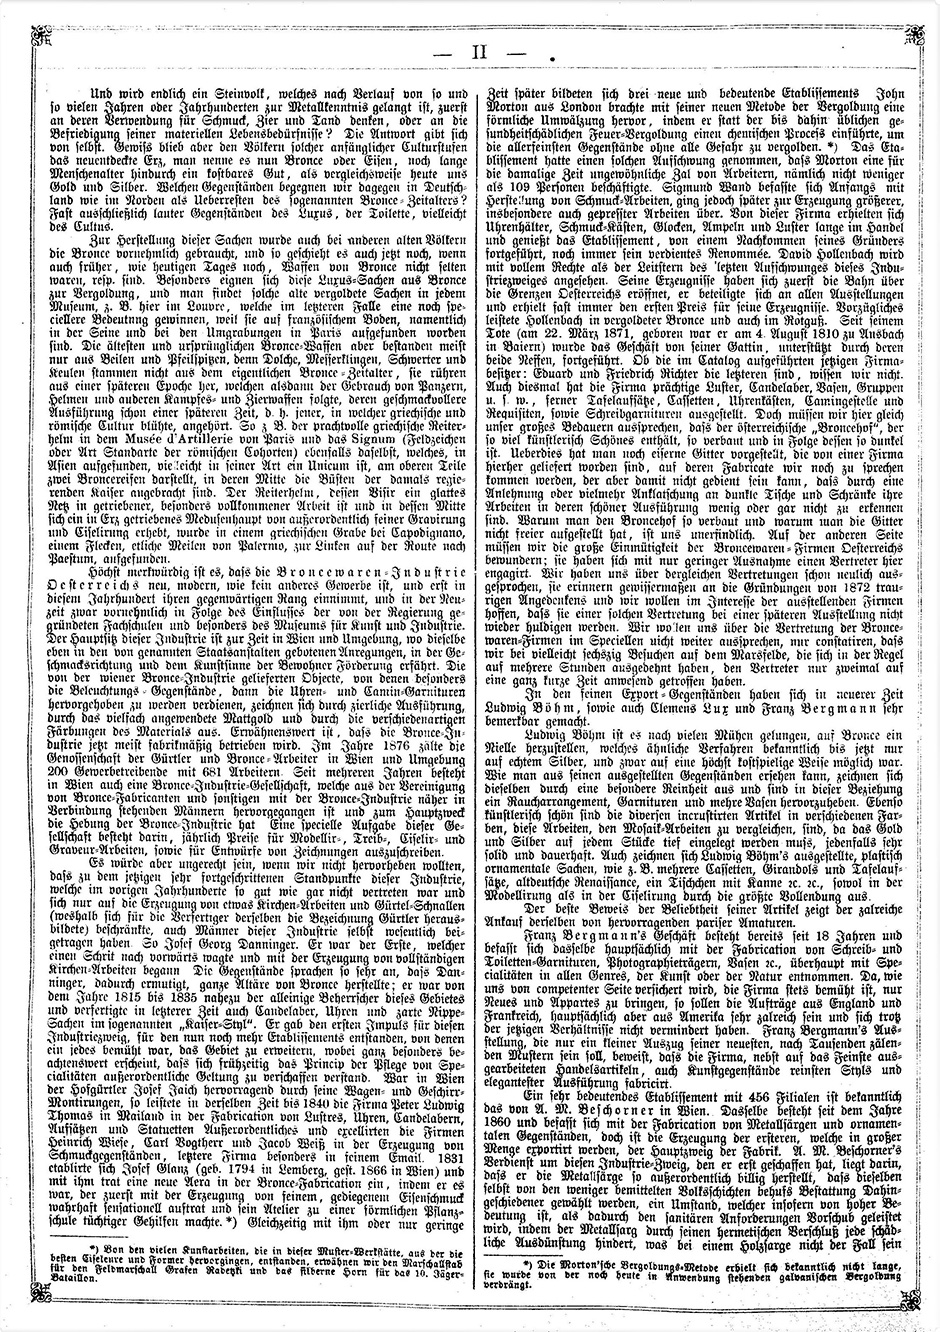 Archivbild 2: Beilage zur: "Österreichischen Gartenlaube" vom 19.9.1878